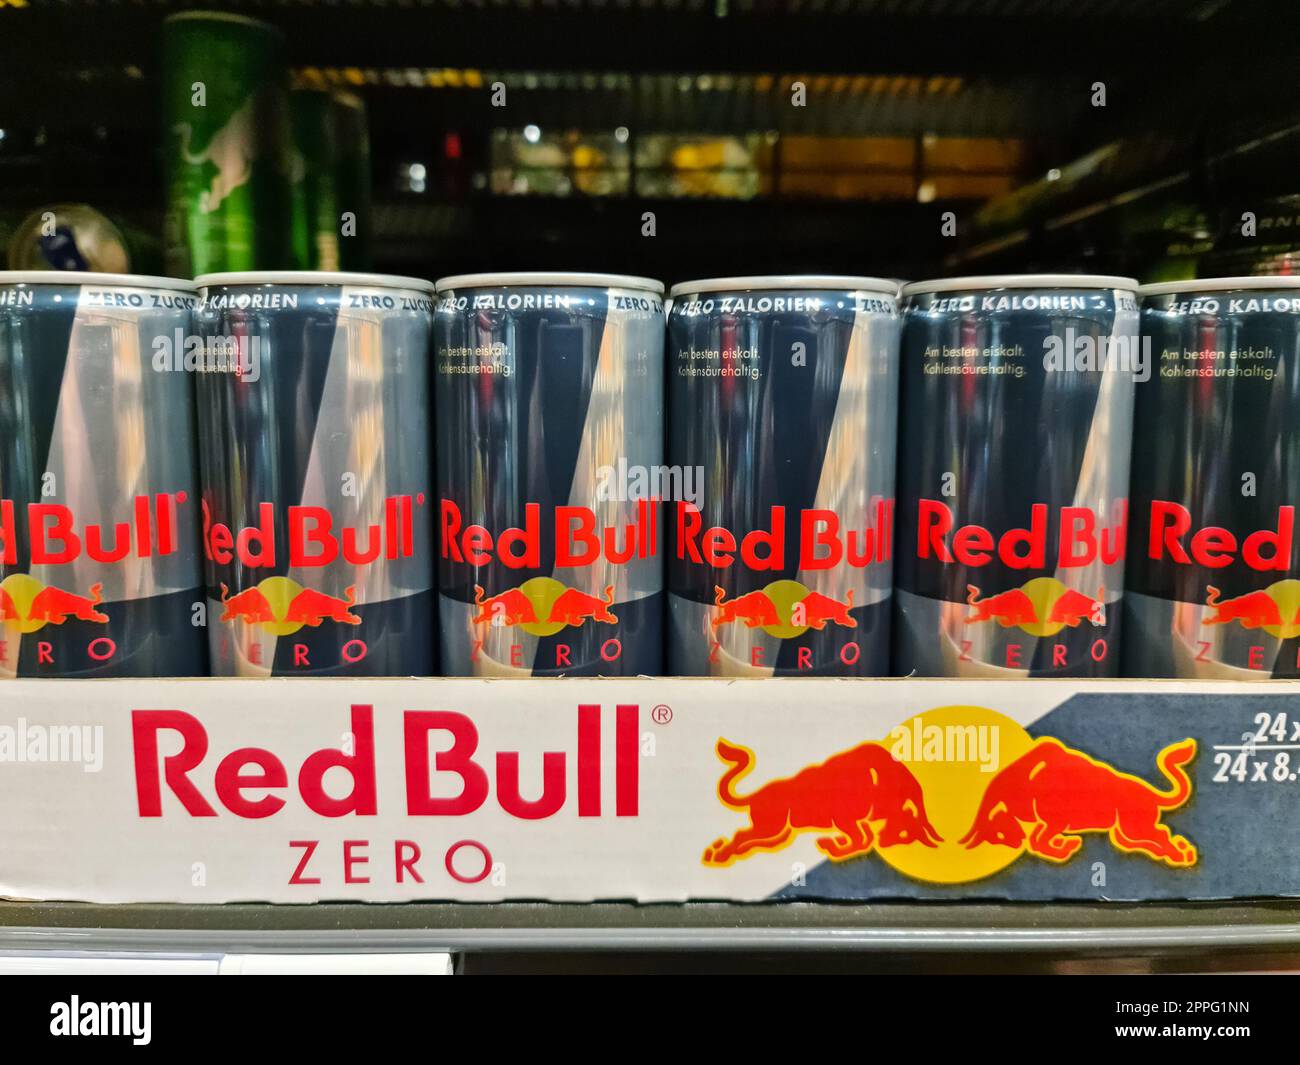 Kiel, Alemania - 03 de abril de 2023: Una paleta de latas de bebidas Red Bull en un estante de supermercado Foto de stock